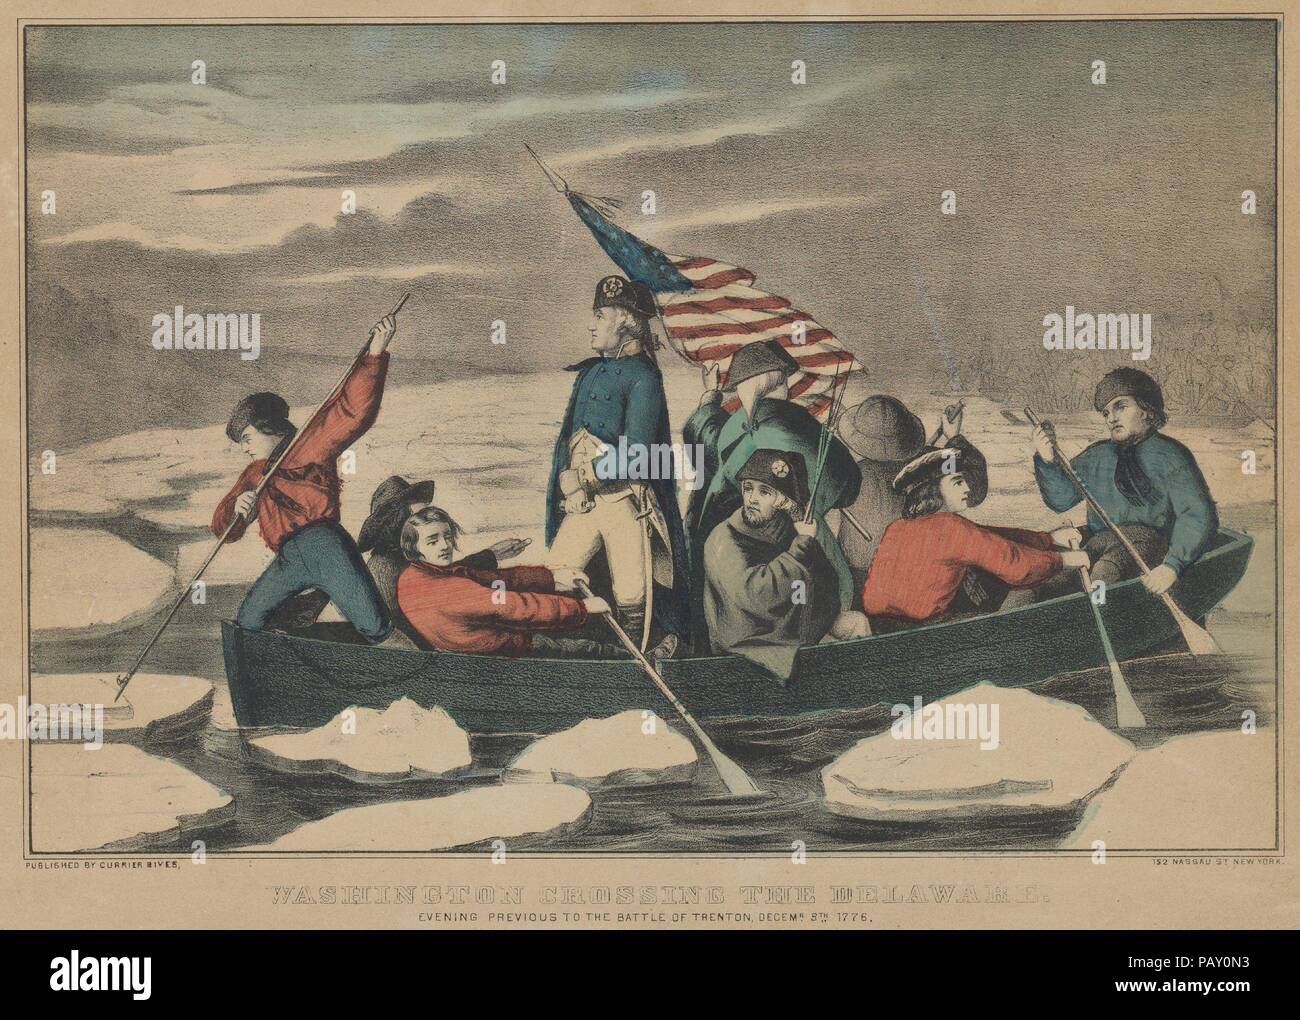 Washington Überquerung des Delaware - am Abend vor der Schlacht von Trenton, Dezember 5th, 1776. Abmessungen: Bild: 8 3/16 x 12 1/2 in. (20,8 × 31,7 cm) Blatt: 10 1/16 x 14 3/16 in. (25,5 × 36 cm). Herausgeber: Currier & Ives (American, Aktiv, New York, 1857-1907). Sitter: George Washington (American, 1732-1799). Datum: 1857-71. Szene aus der Amerikanischen Revolution. George Washington steht in Boot überqueren der eisigen Fluss. Acht Soldaten Washington im Boot begleiten, einige Rudern, ein Eis aus dem Weg schieben, einer Holding der amerikanischen Flagge aloft. Museum: Metropolitan Museum of Art, New York, Stockfoto